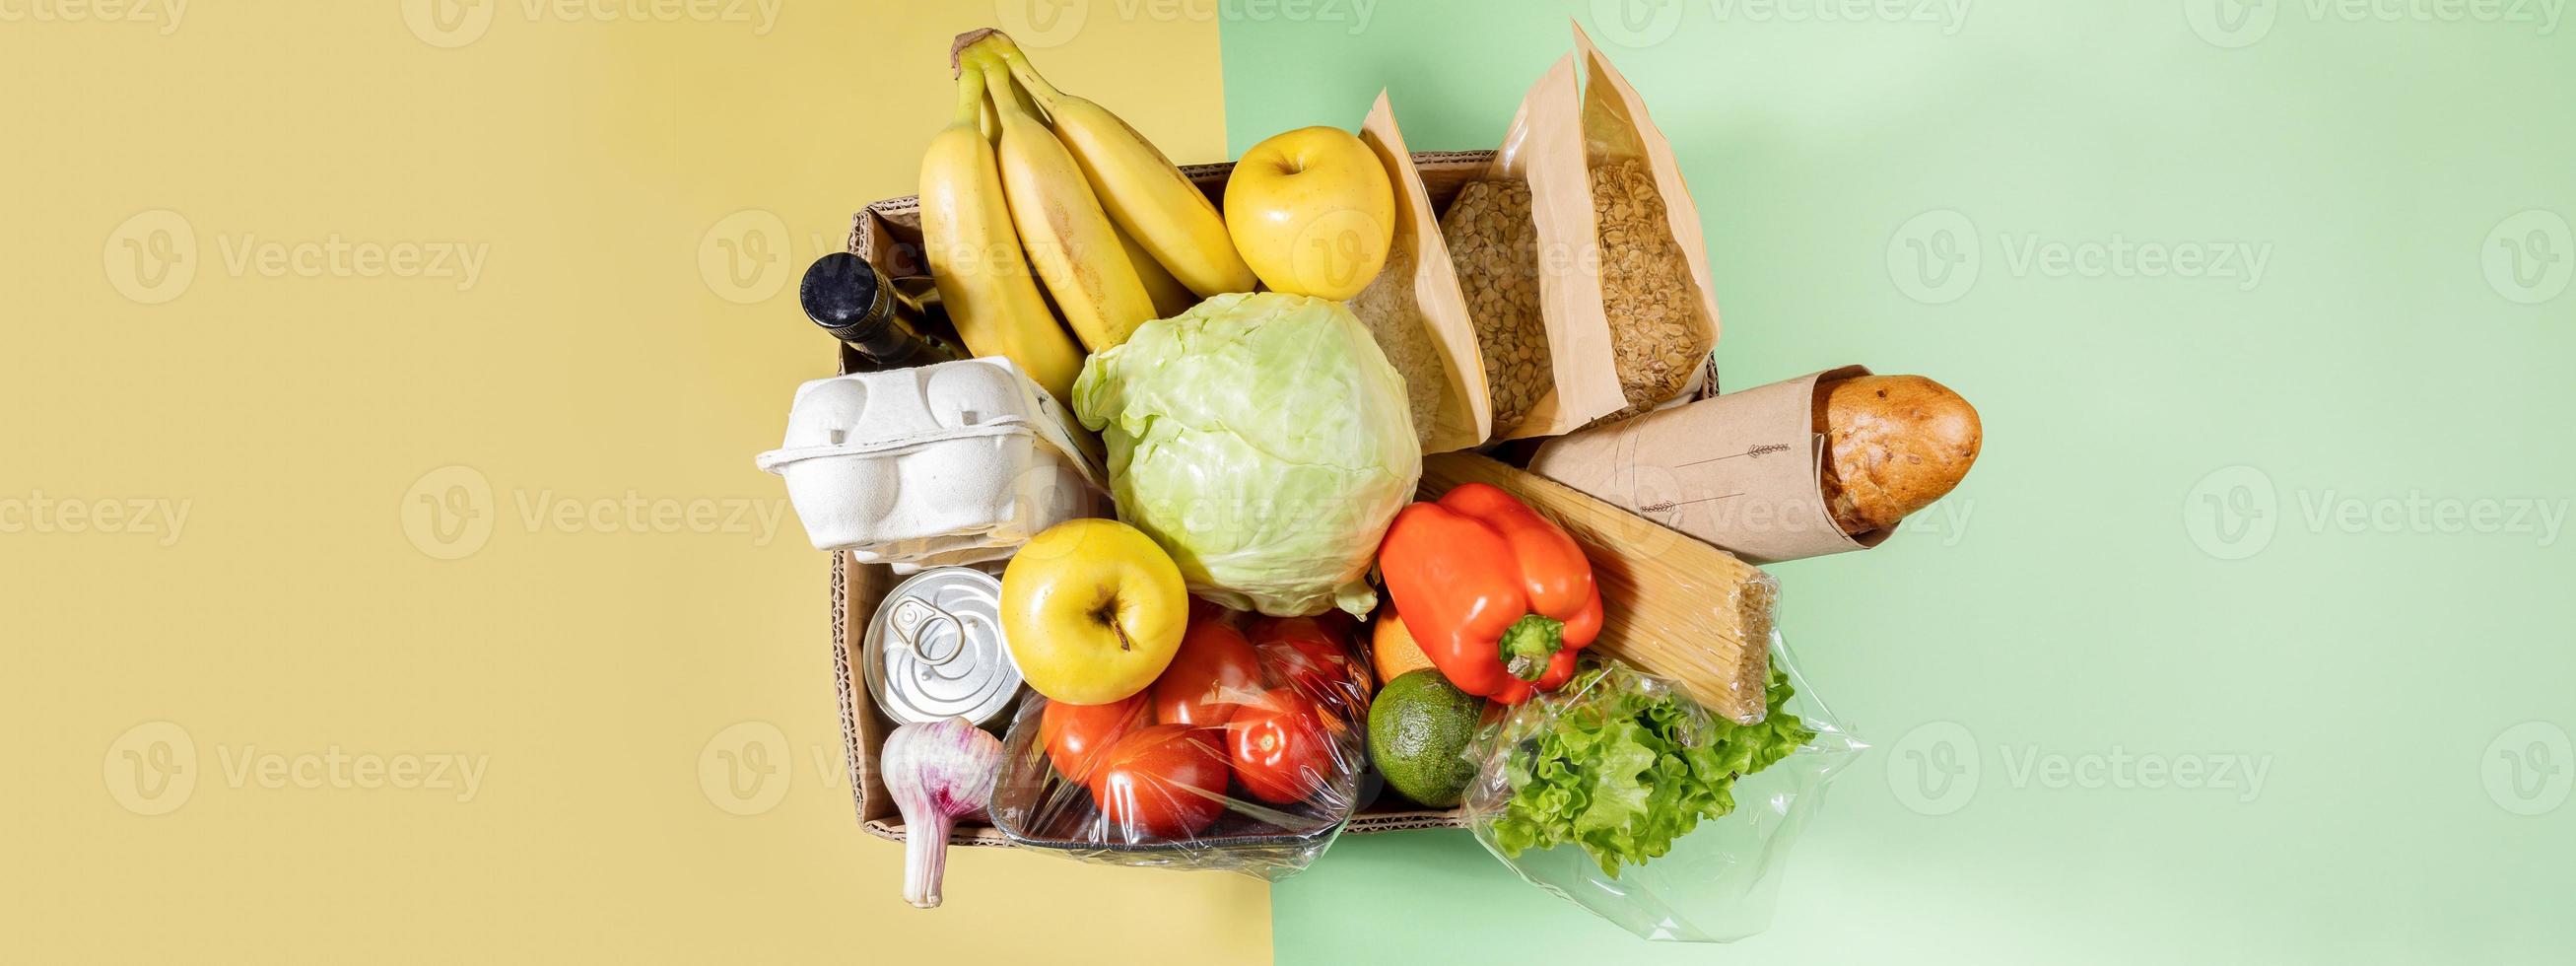 Draufsicht auf Karton mit Lebensmitteln auf grün-gelbem Hintergrund. sichere Lieferung. Banner mit Kopierbereich. foto